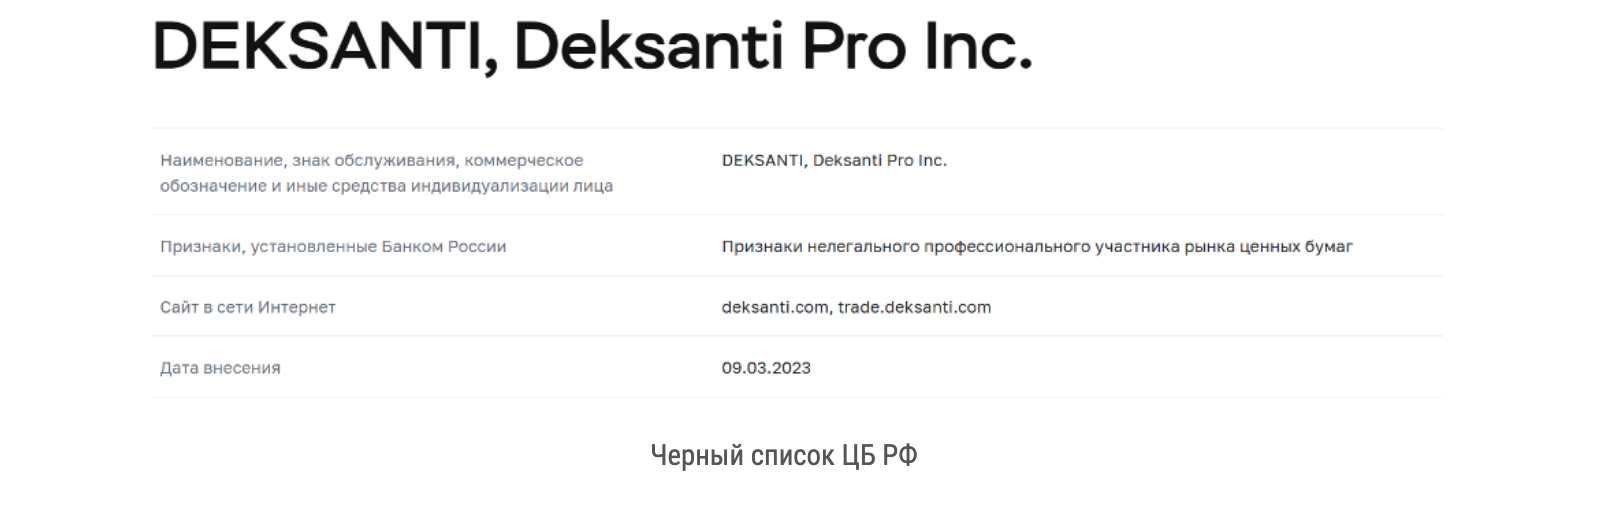 Deksanti — шаблонный псевдоброкер, зарабатывающий на краже клиентских денег